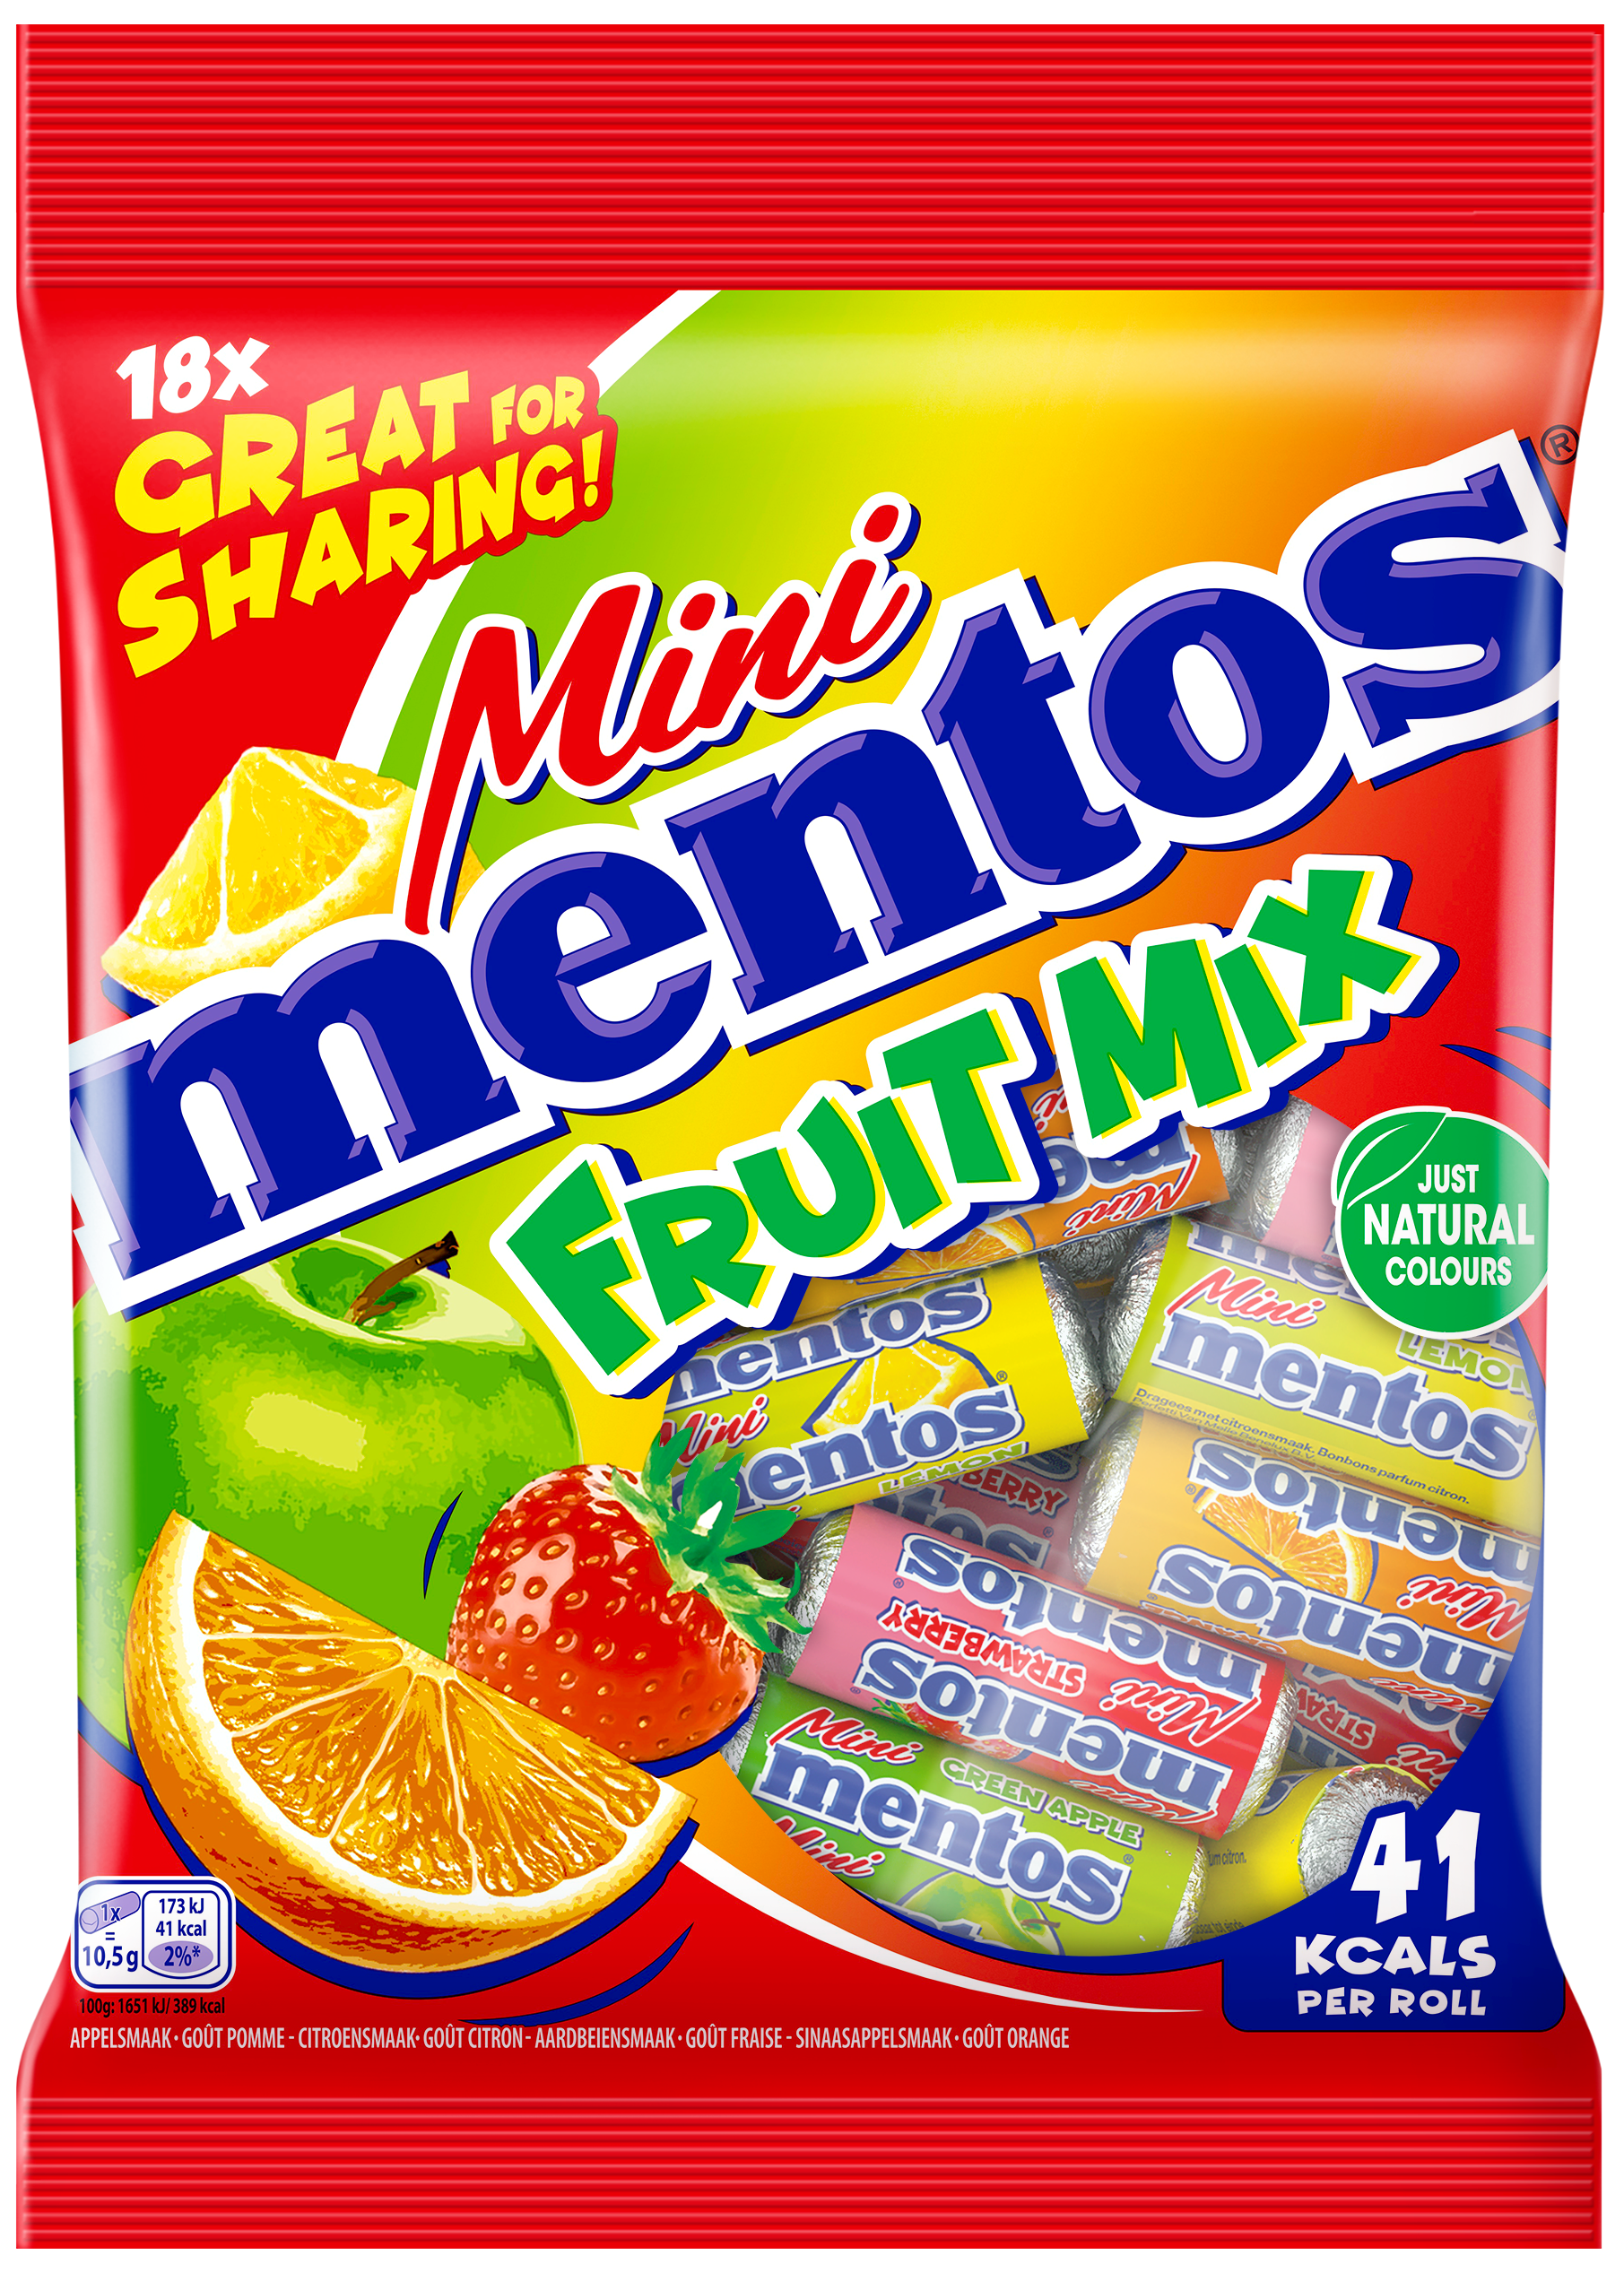 Mentos mini casse-tête 50 pièces - Fruit